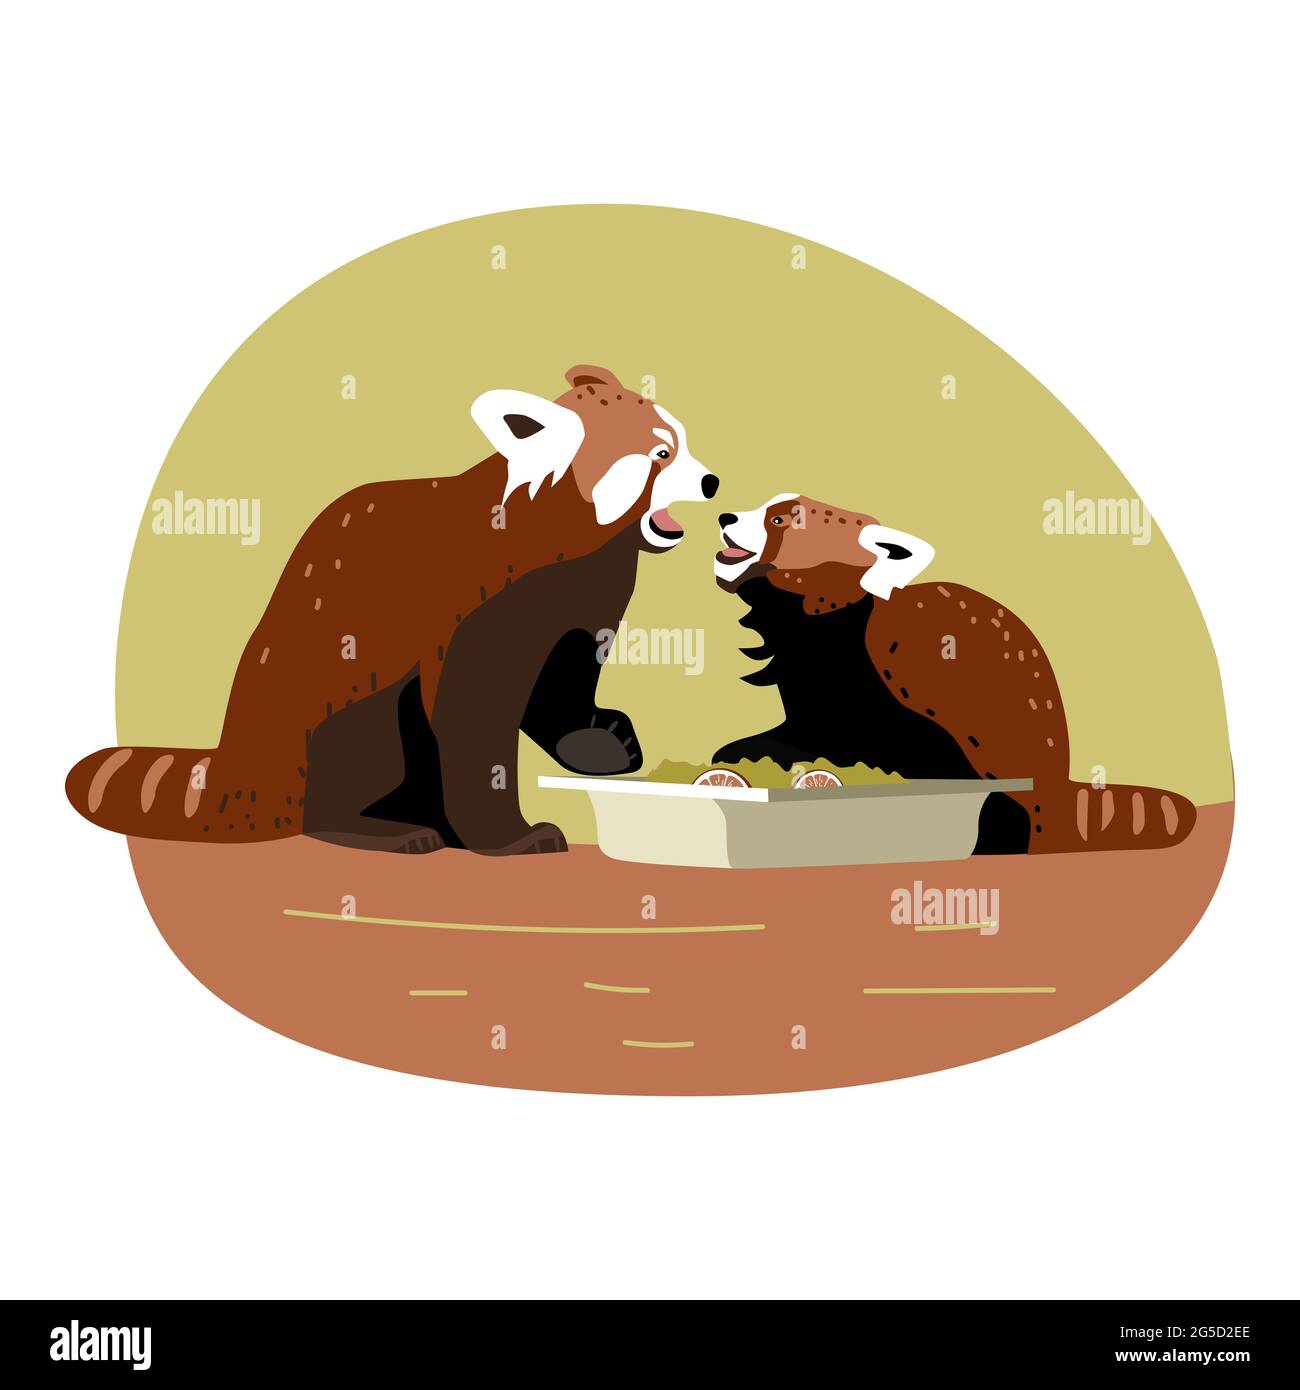 Panda rouge mère et son fils à bouche ouverte près du bol de nourriture, les animaux expriment des émotions, querelle familiale pour les mémoires, illustration des enfants, dessiné à la main Illustration de Vecteur